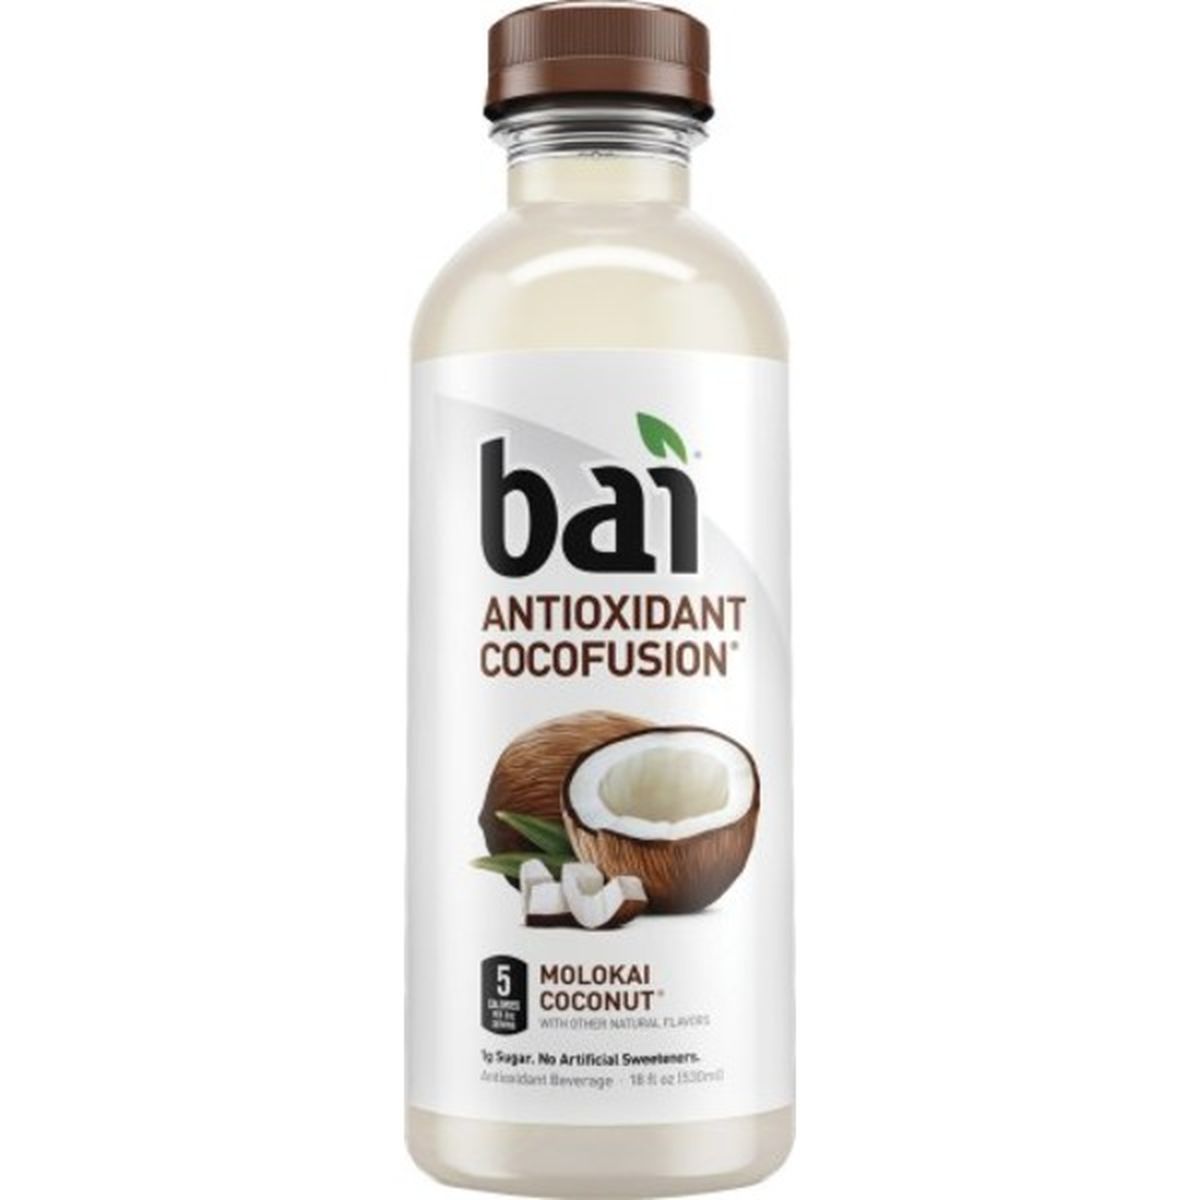 Calories in Bai Molokai Coconut, Antioxidant Infused Beverage Antioxidant Beverage, Molokai Coconut, 6 Pack